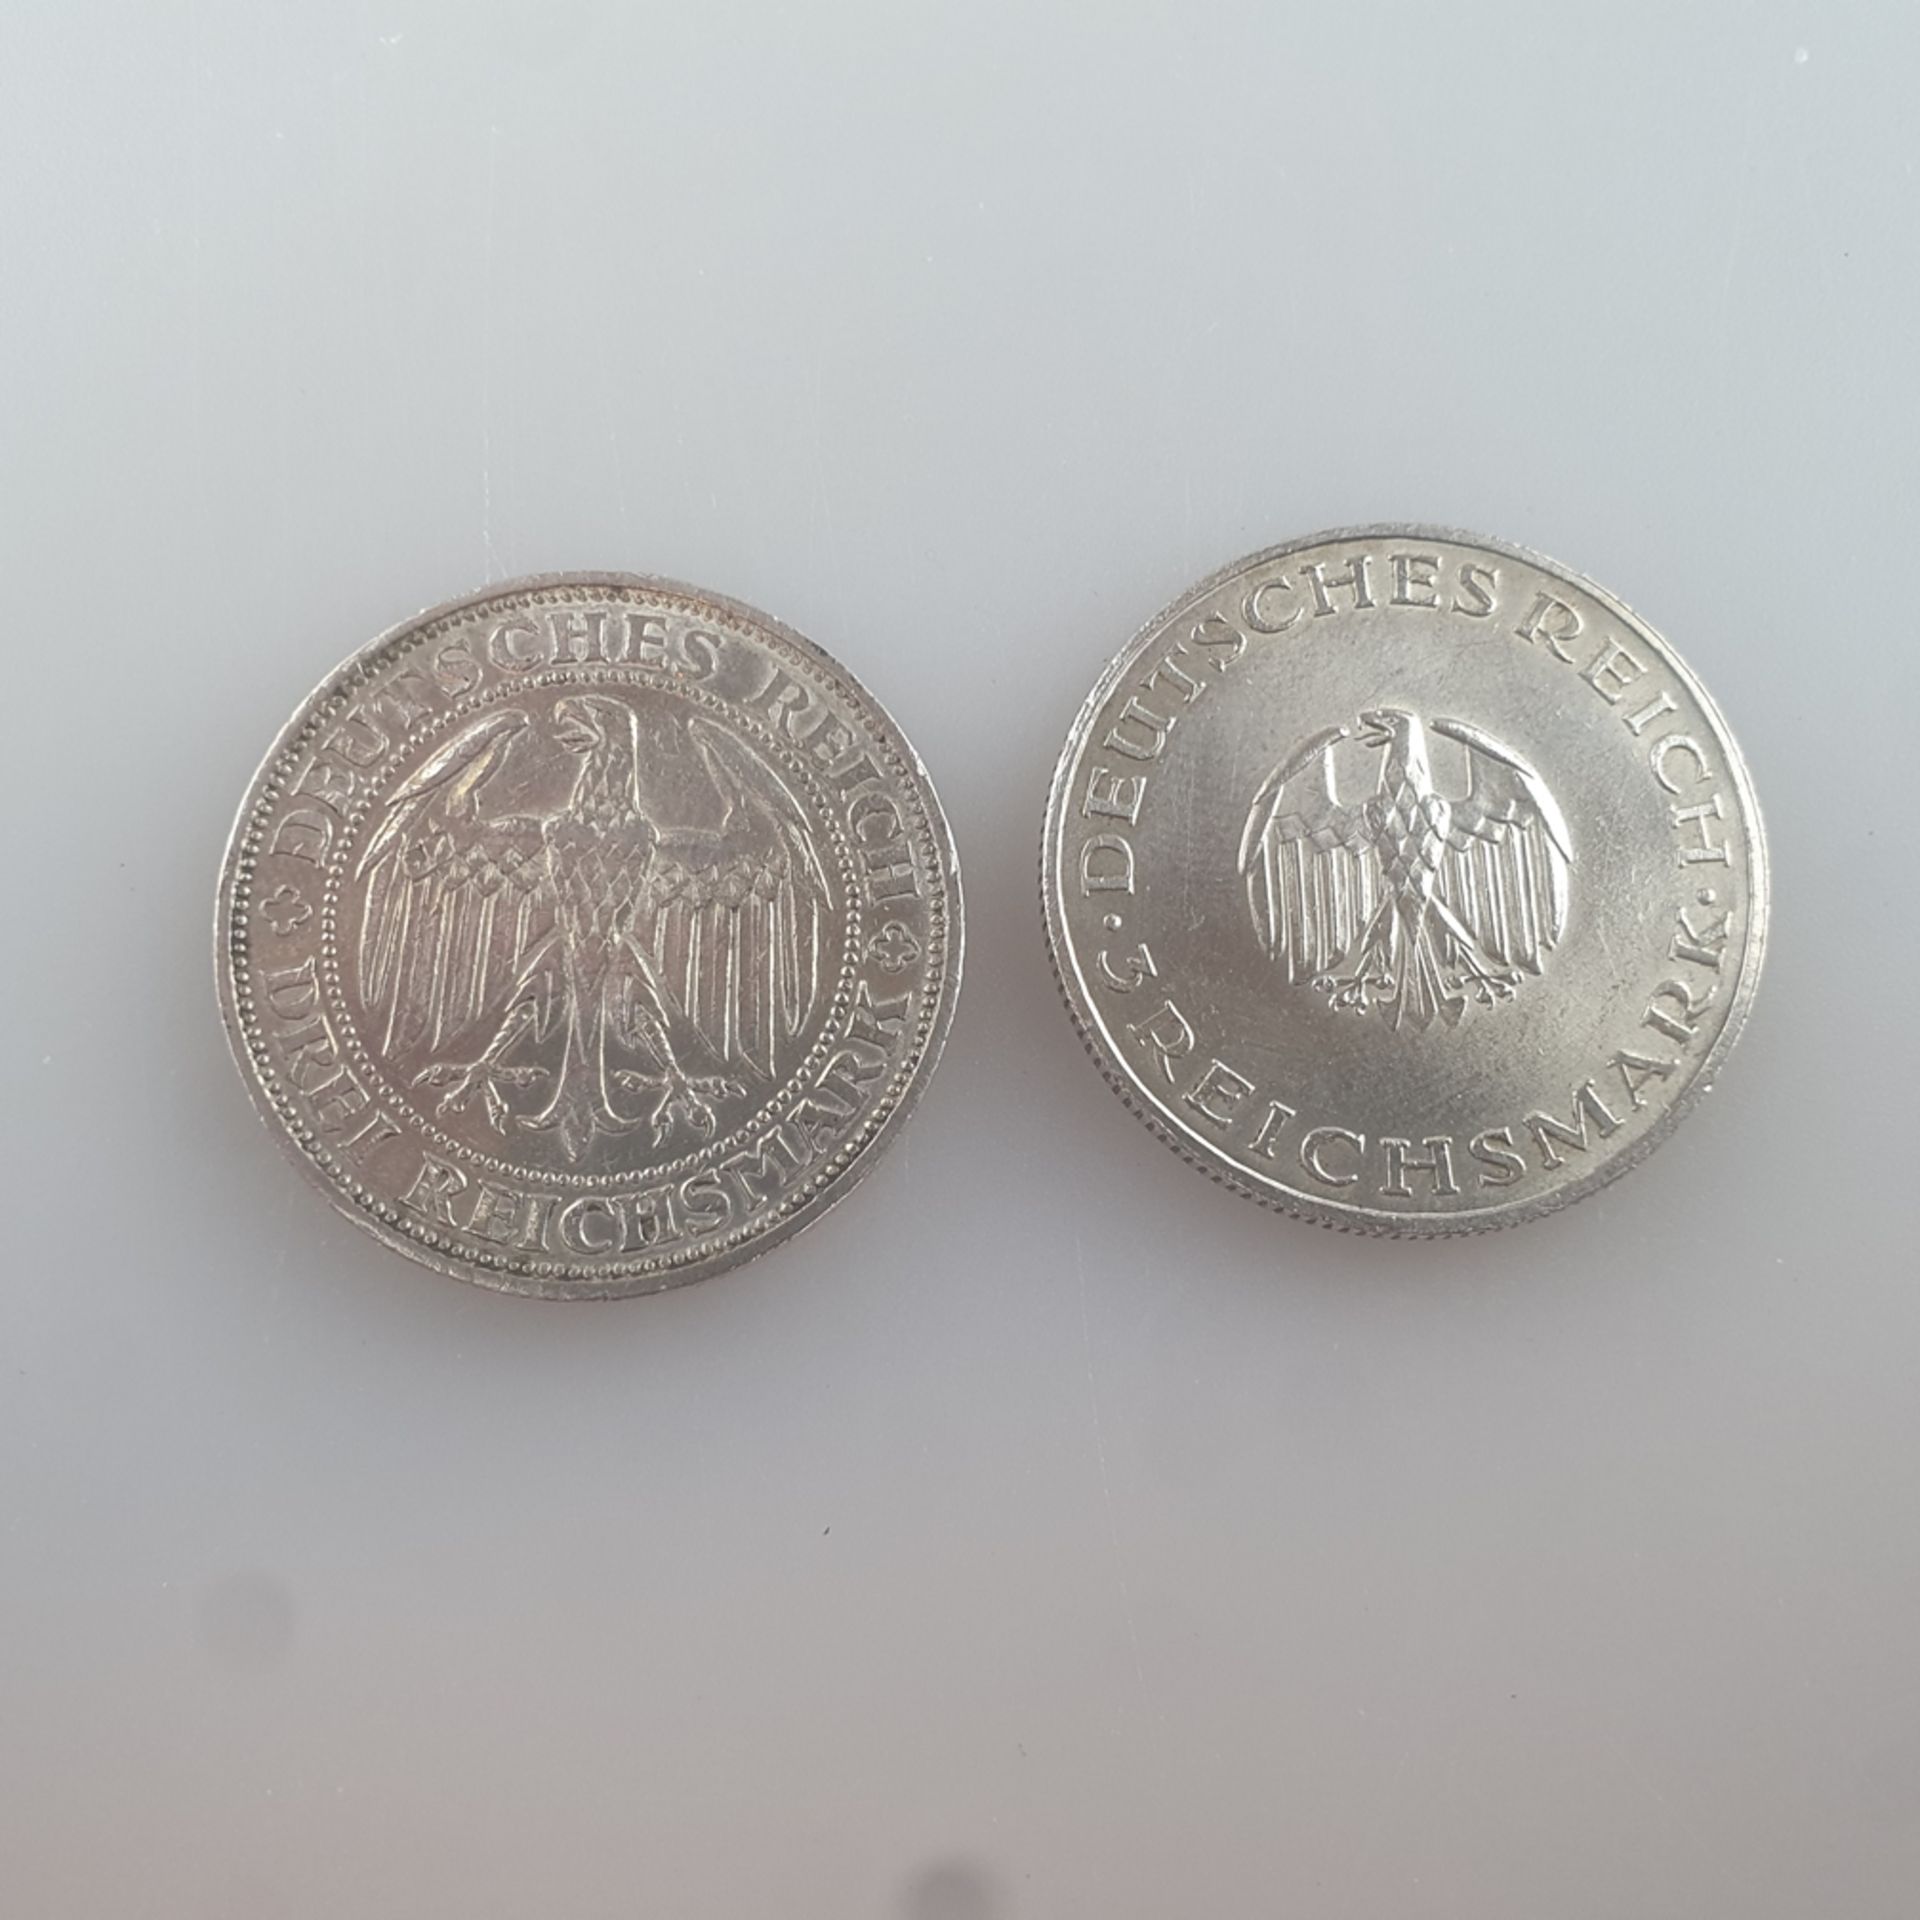 Zwei Silbermünzen 3 Reichsmark 1929 - Weimarer Republik, 500/000 Silber, jeweils Dm. 30 mm, Bruttog - Image 2 of 2